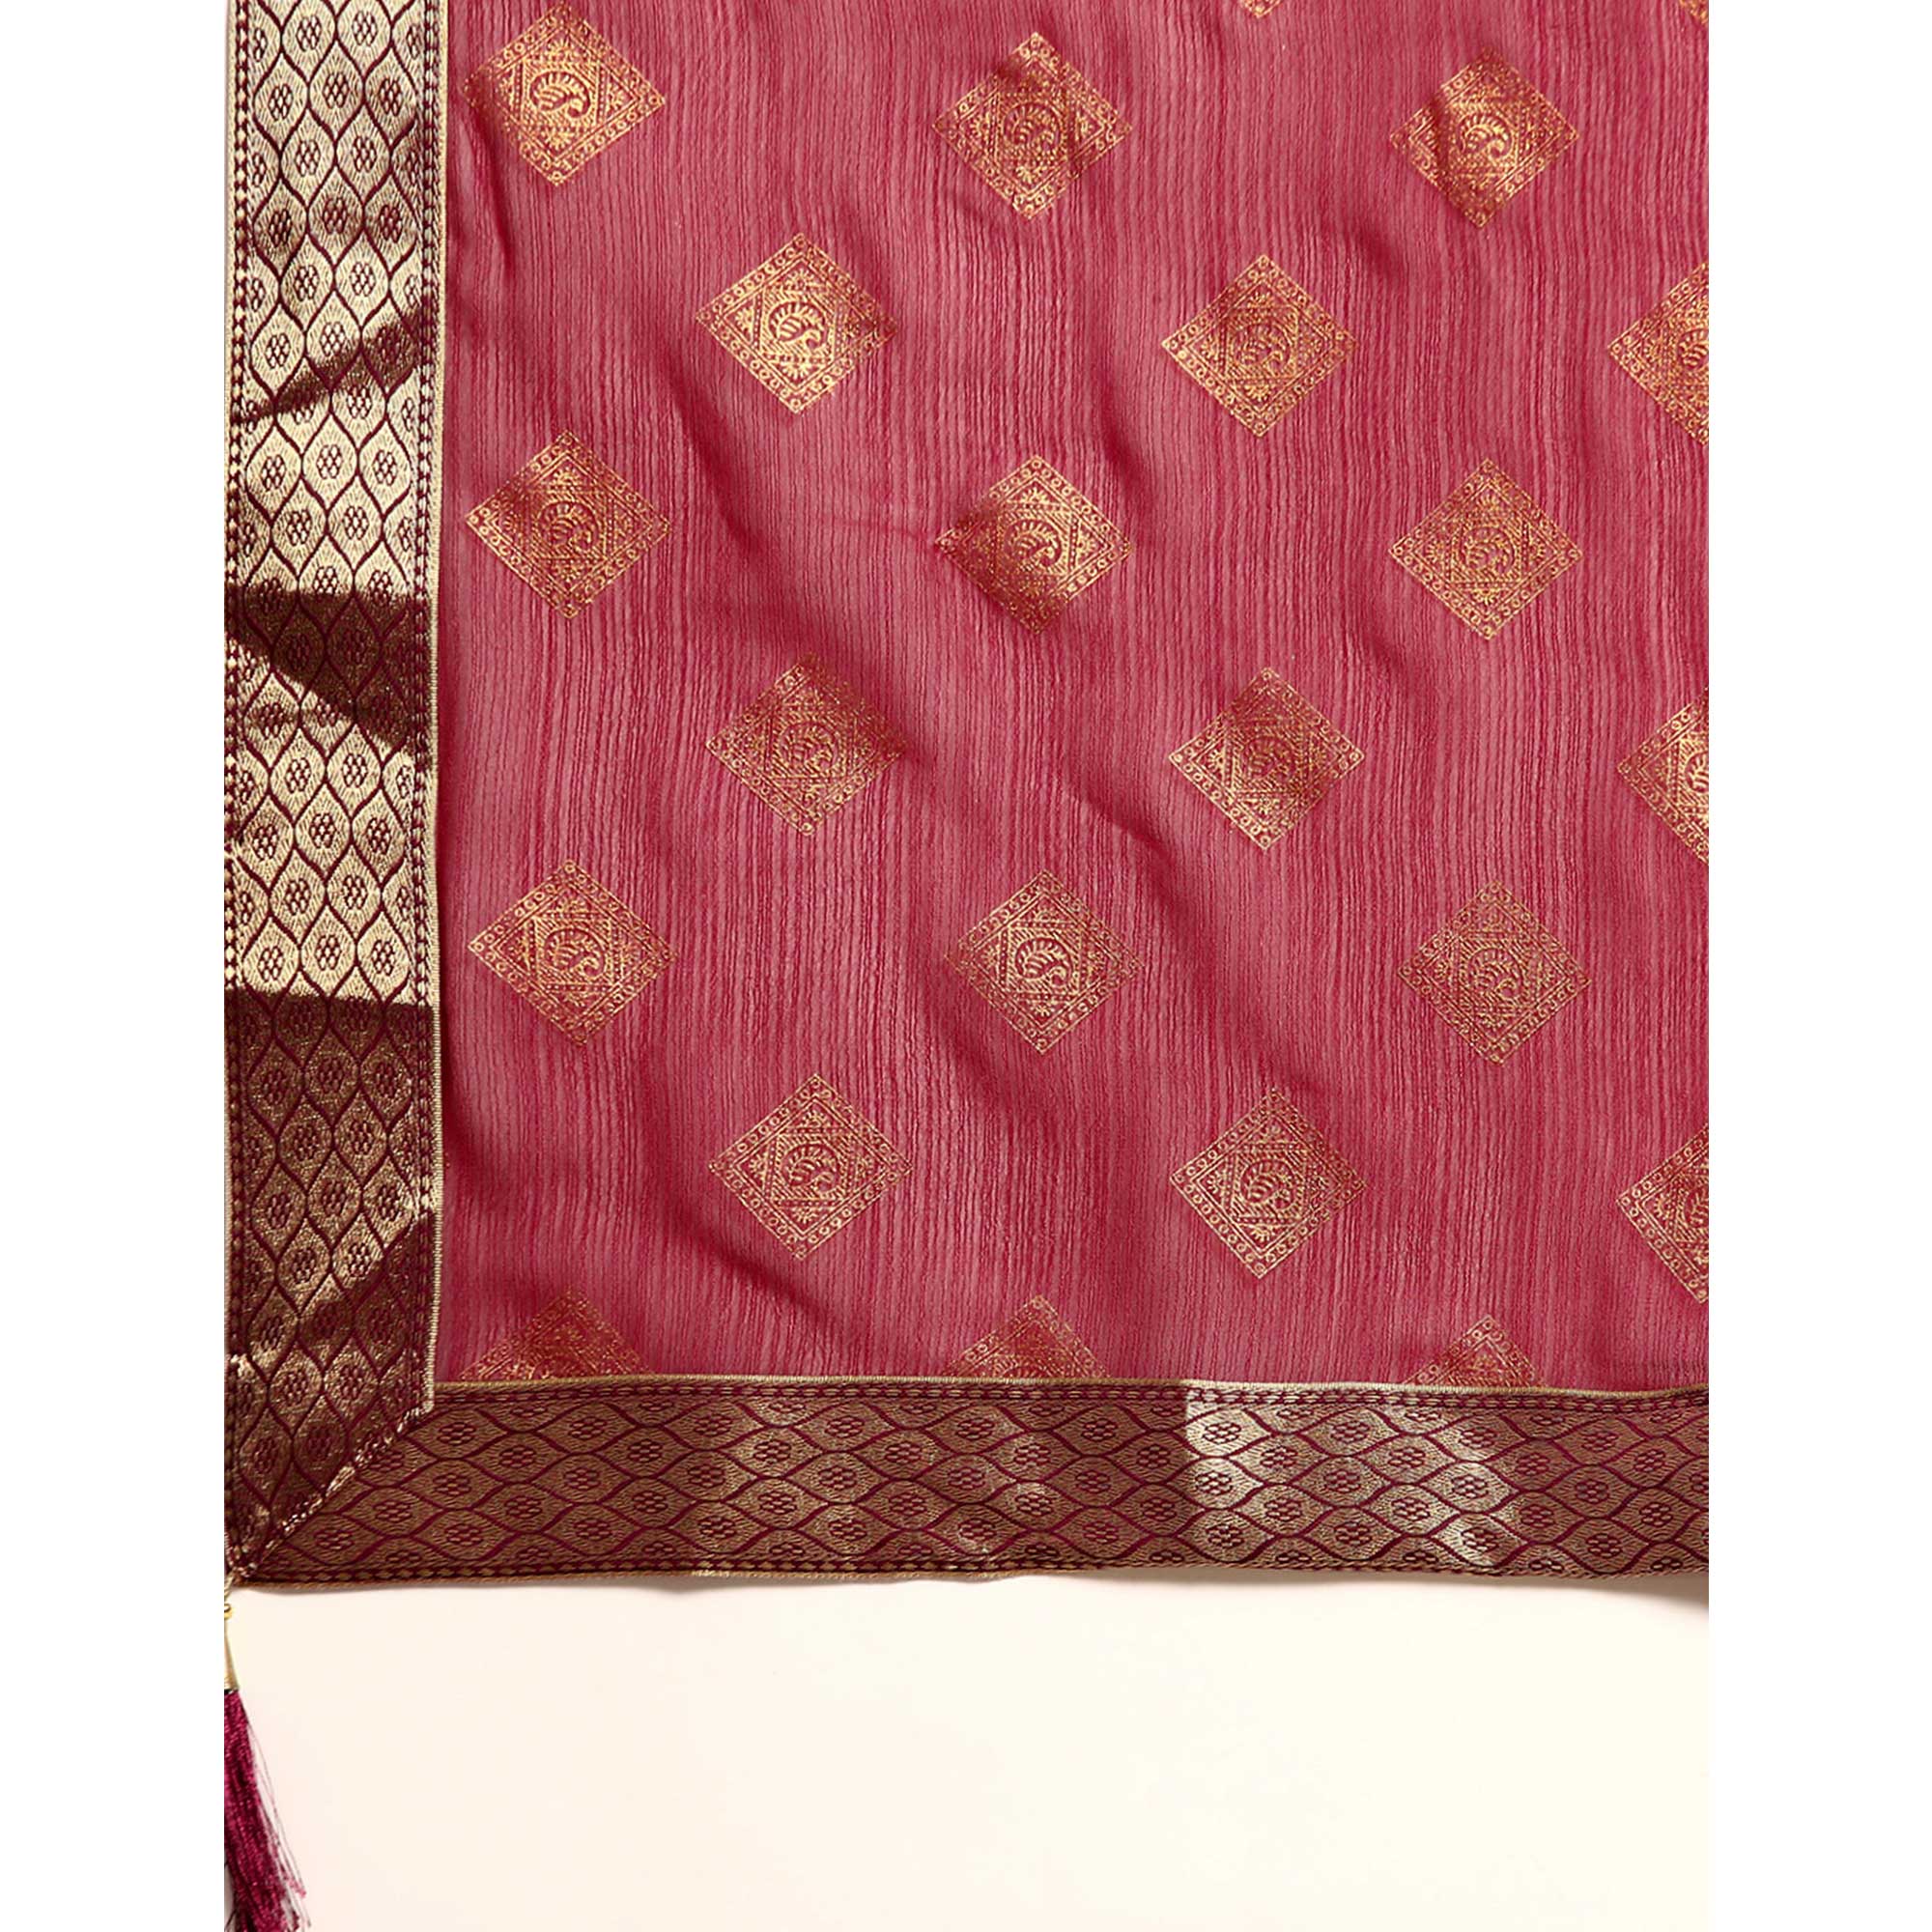 Wine Foil Printed Chiffon Saree With Tassels